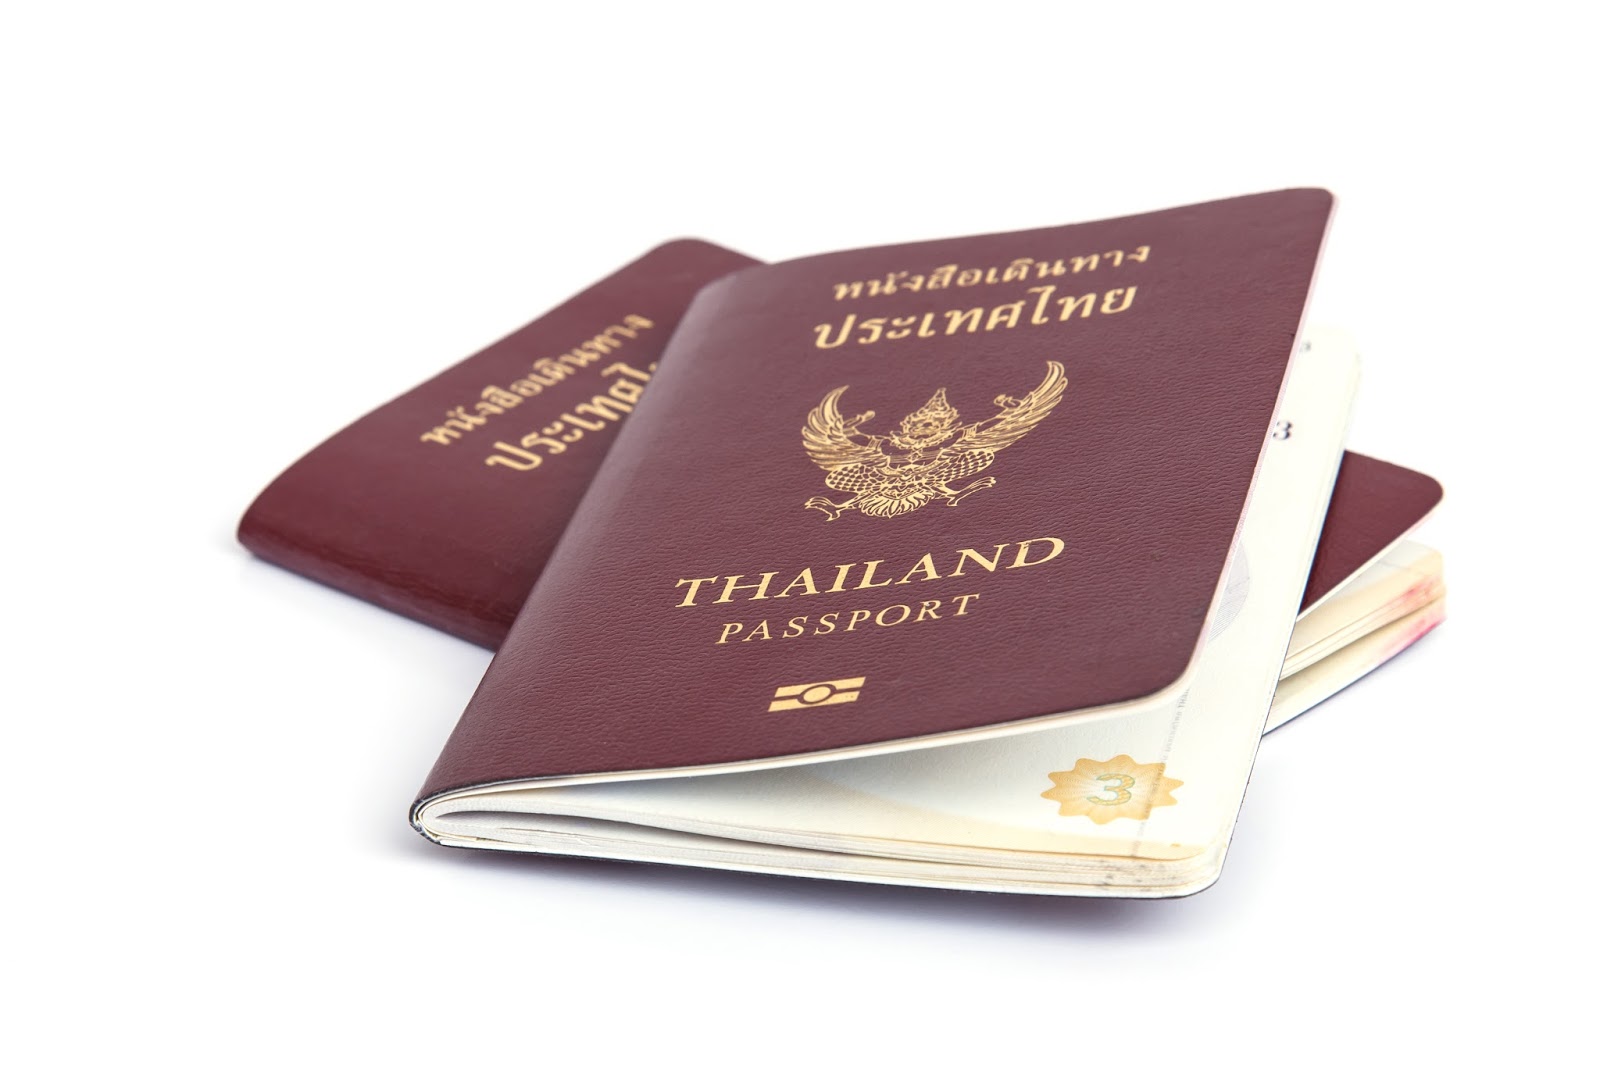 Vietnam visa requirement for Thai